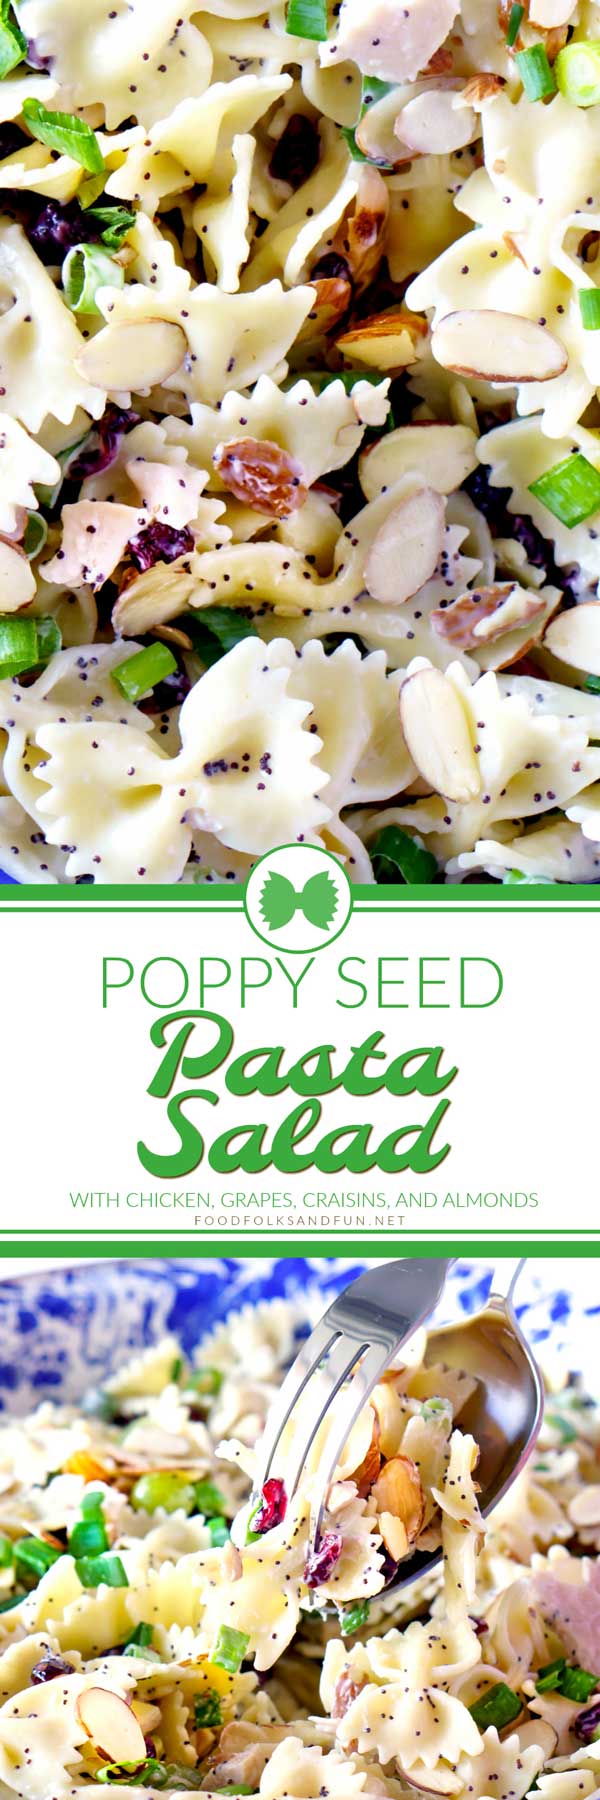 Summer dinner recipe for Poppy Seed Pasta Salad